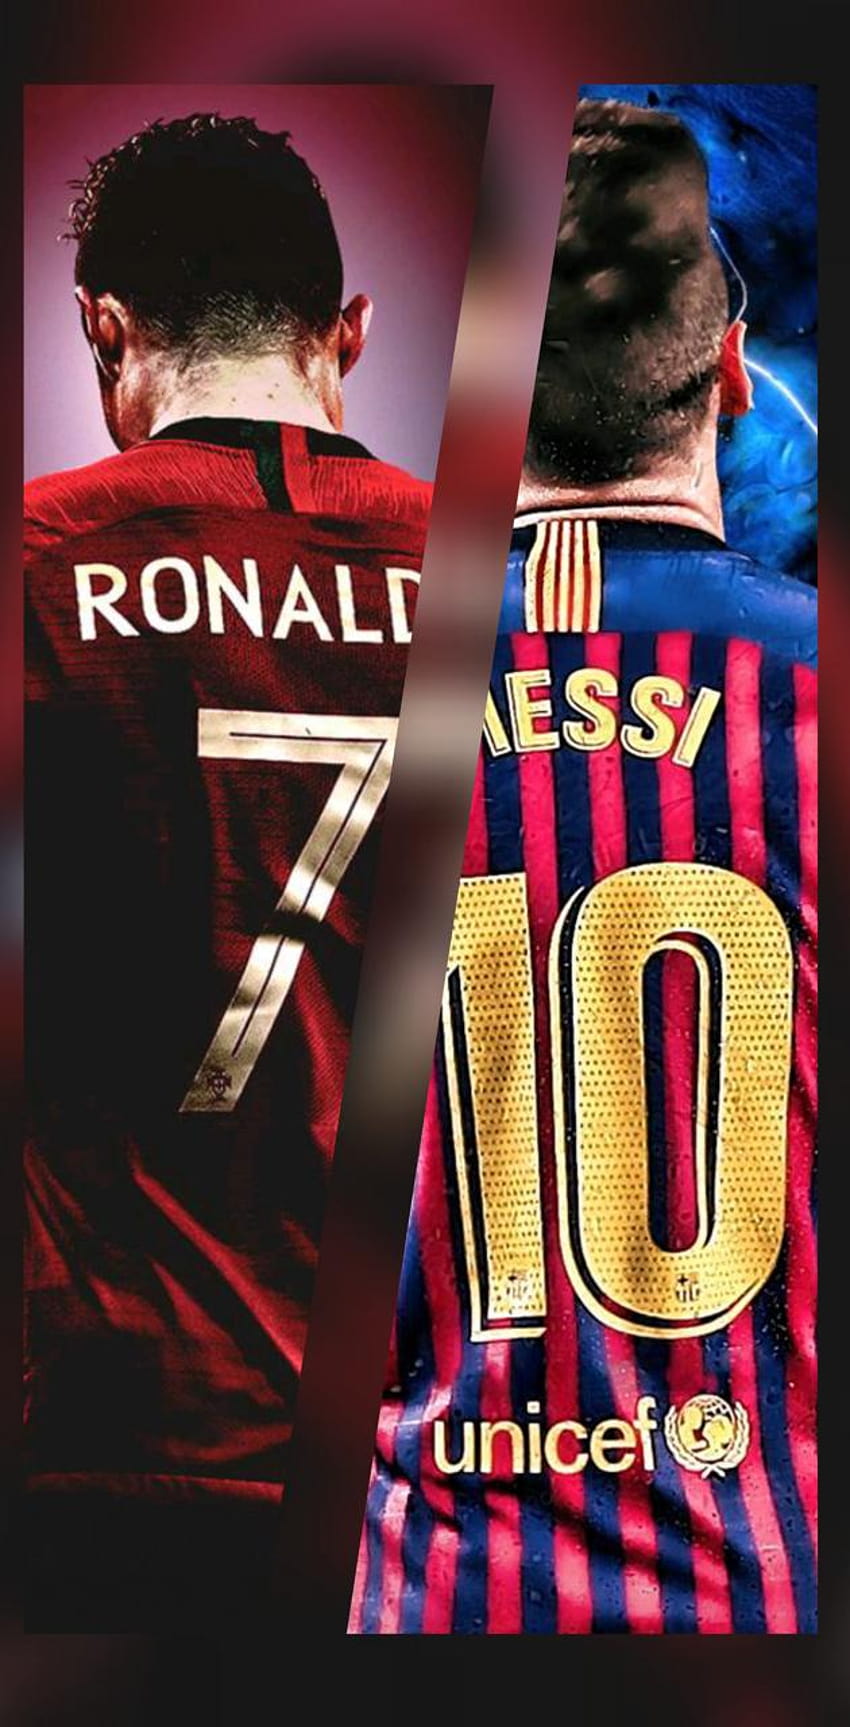 CR7 và Messi là hai cái tên được nhắc đến nhiều nhất trong thế giới bóng đá. Hãy xem ngay bức ảnh về hai ngôi sao này để thực sự cảm nhận tài năng của họ.